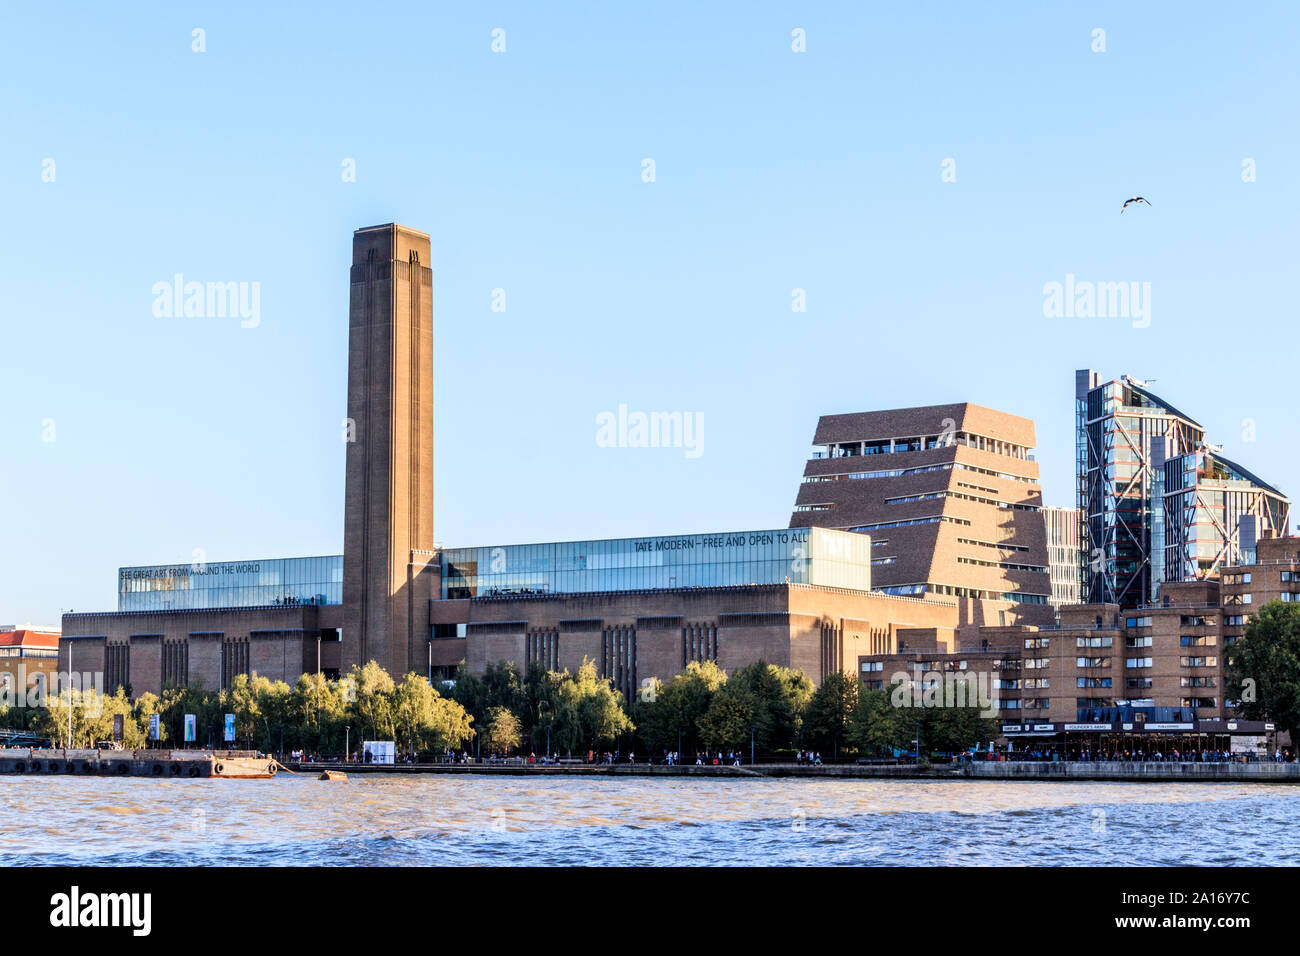 La Tate Modern Art Gallery de l'autre côté de la rivière Thames, London, UK Banque D'Images